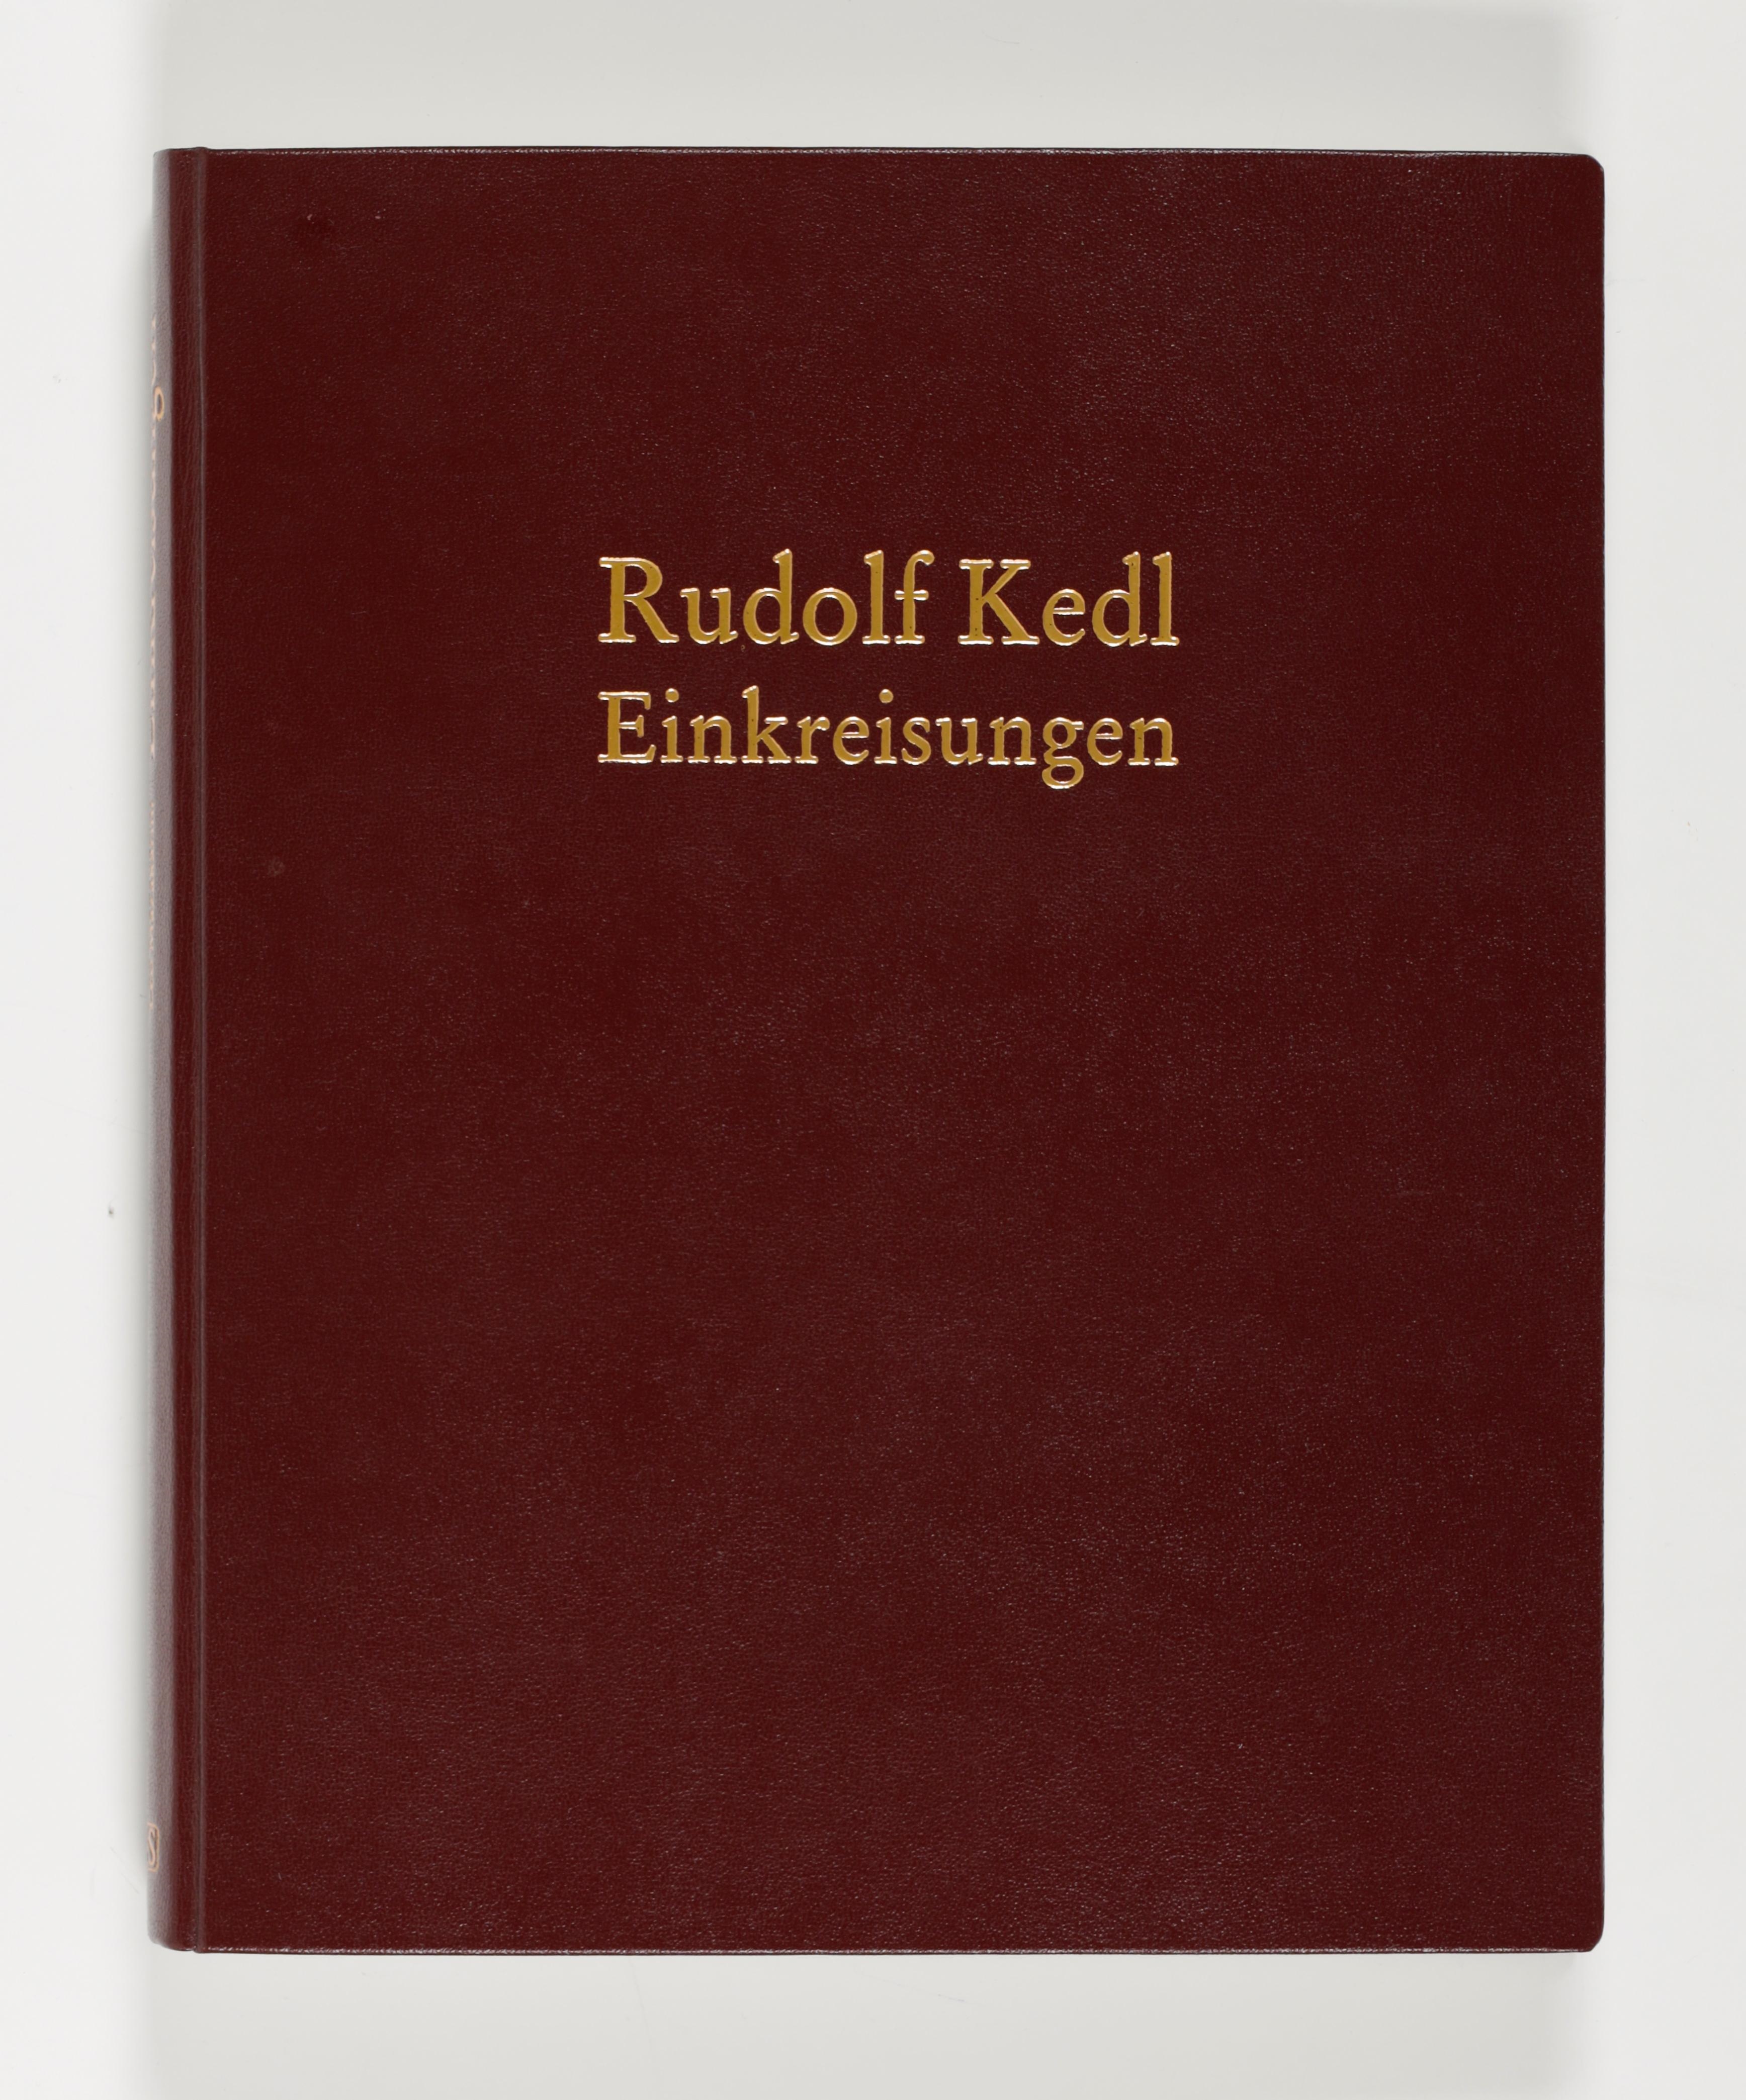 Artwork by Rudolf Kedl, Einkreisungen, Made of bronze cast in relief patinated